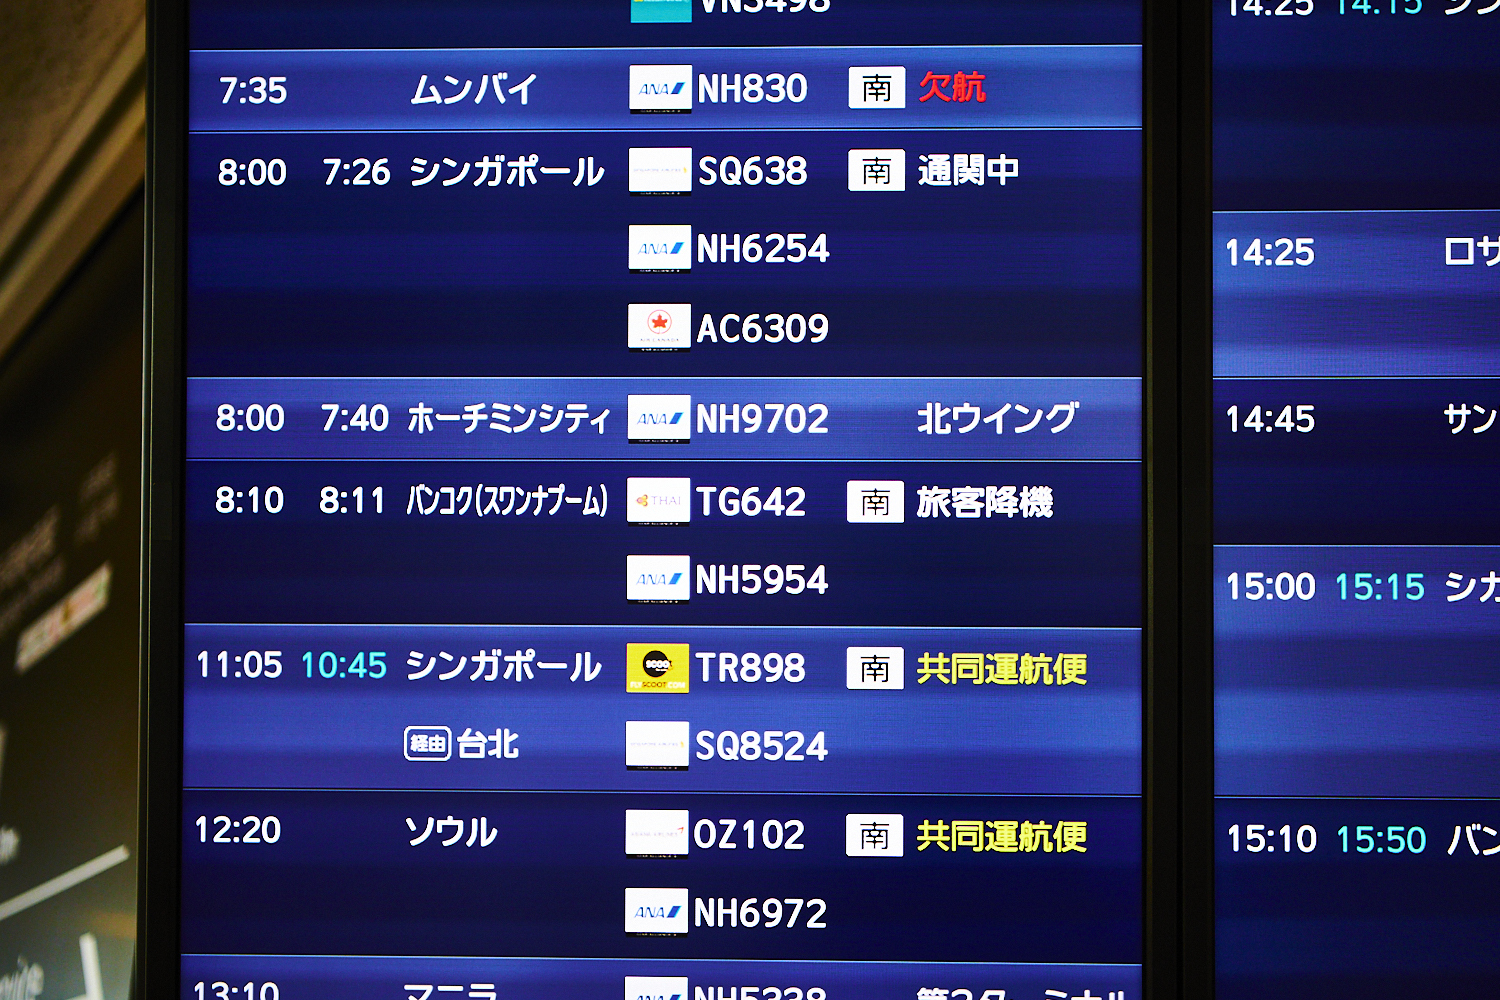 8:11、成田国際空港に到着。